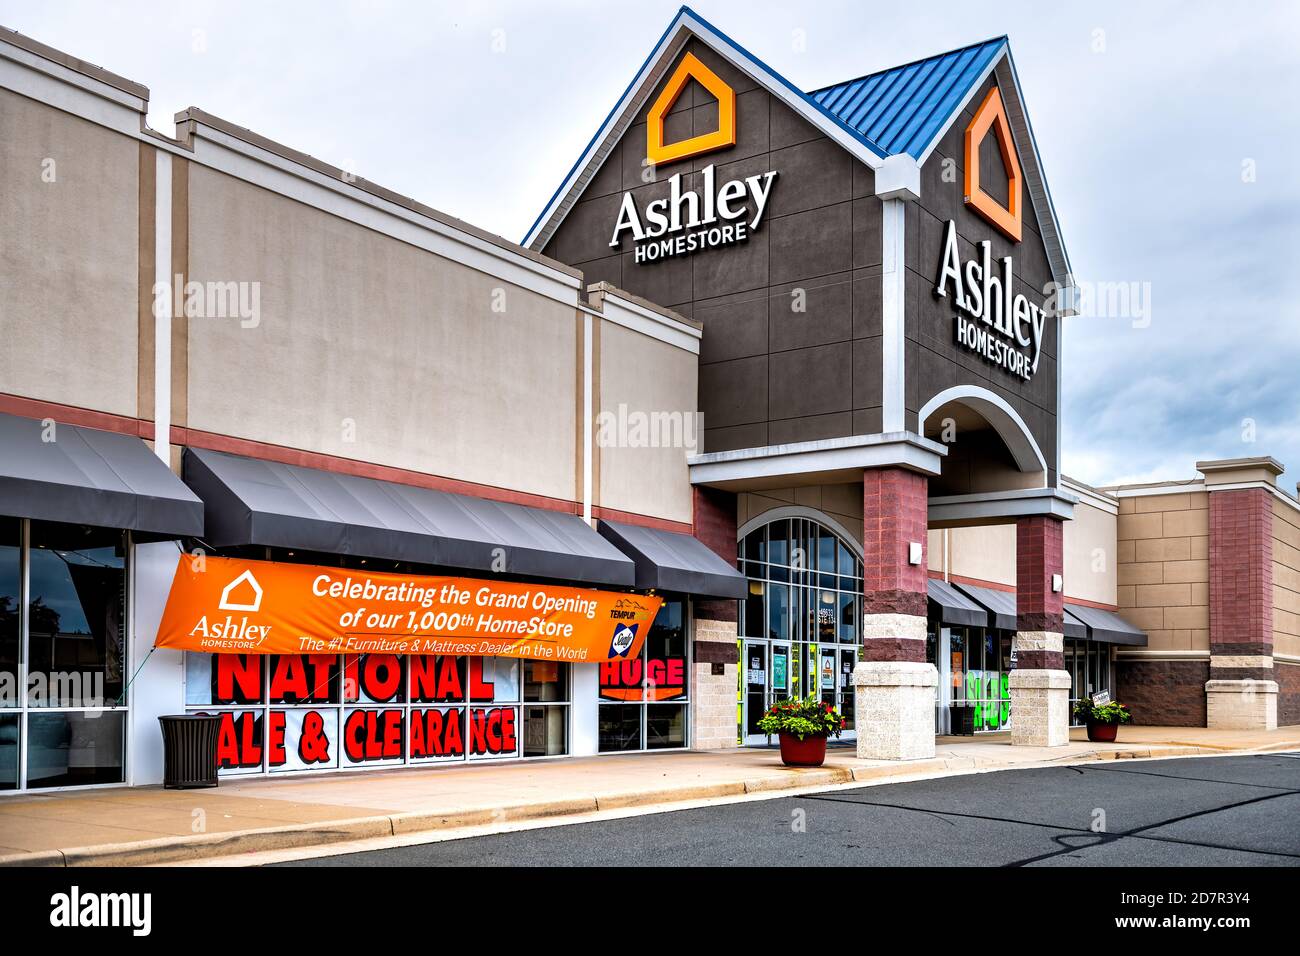 Sterling, USA - 12. September 2020: Ashley Homestore Schild am Ladeneingang in Fairfax County, Virginia mit Banner für große Eröffnung Stockfoto